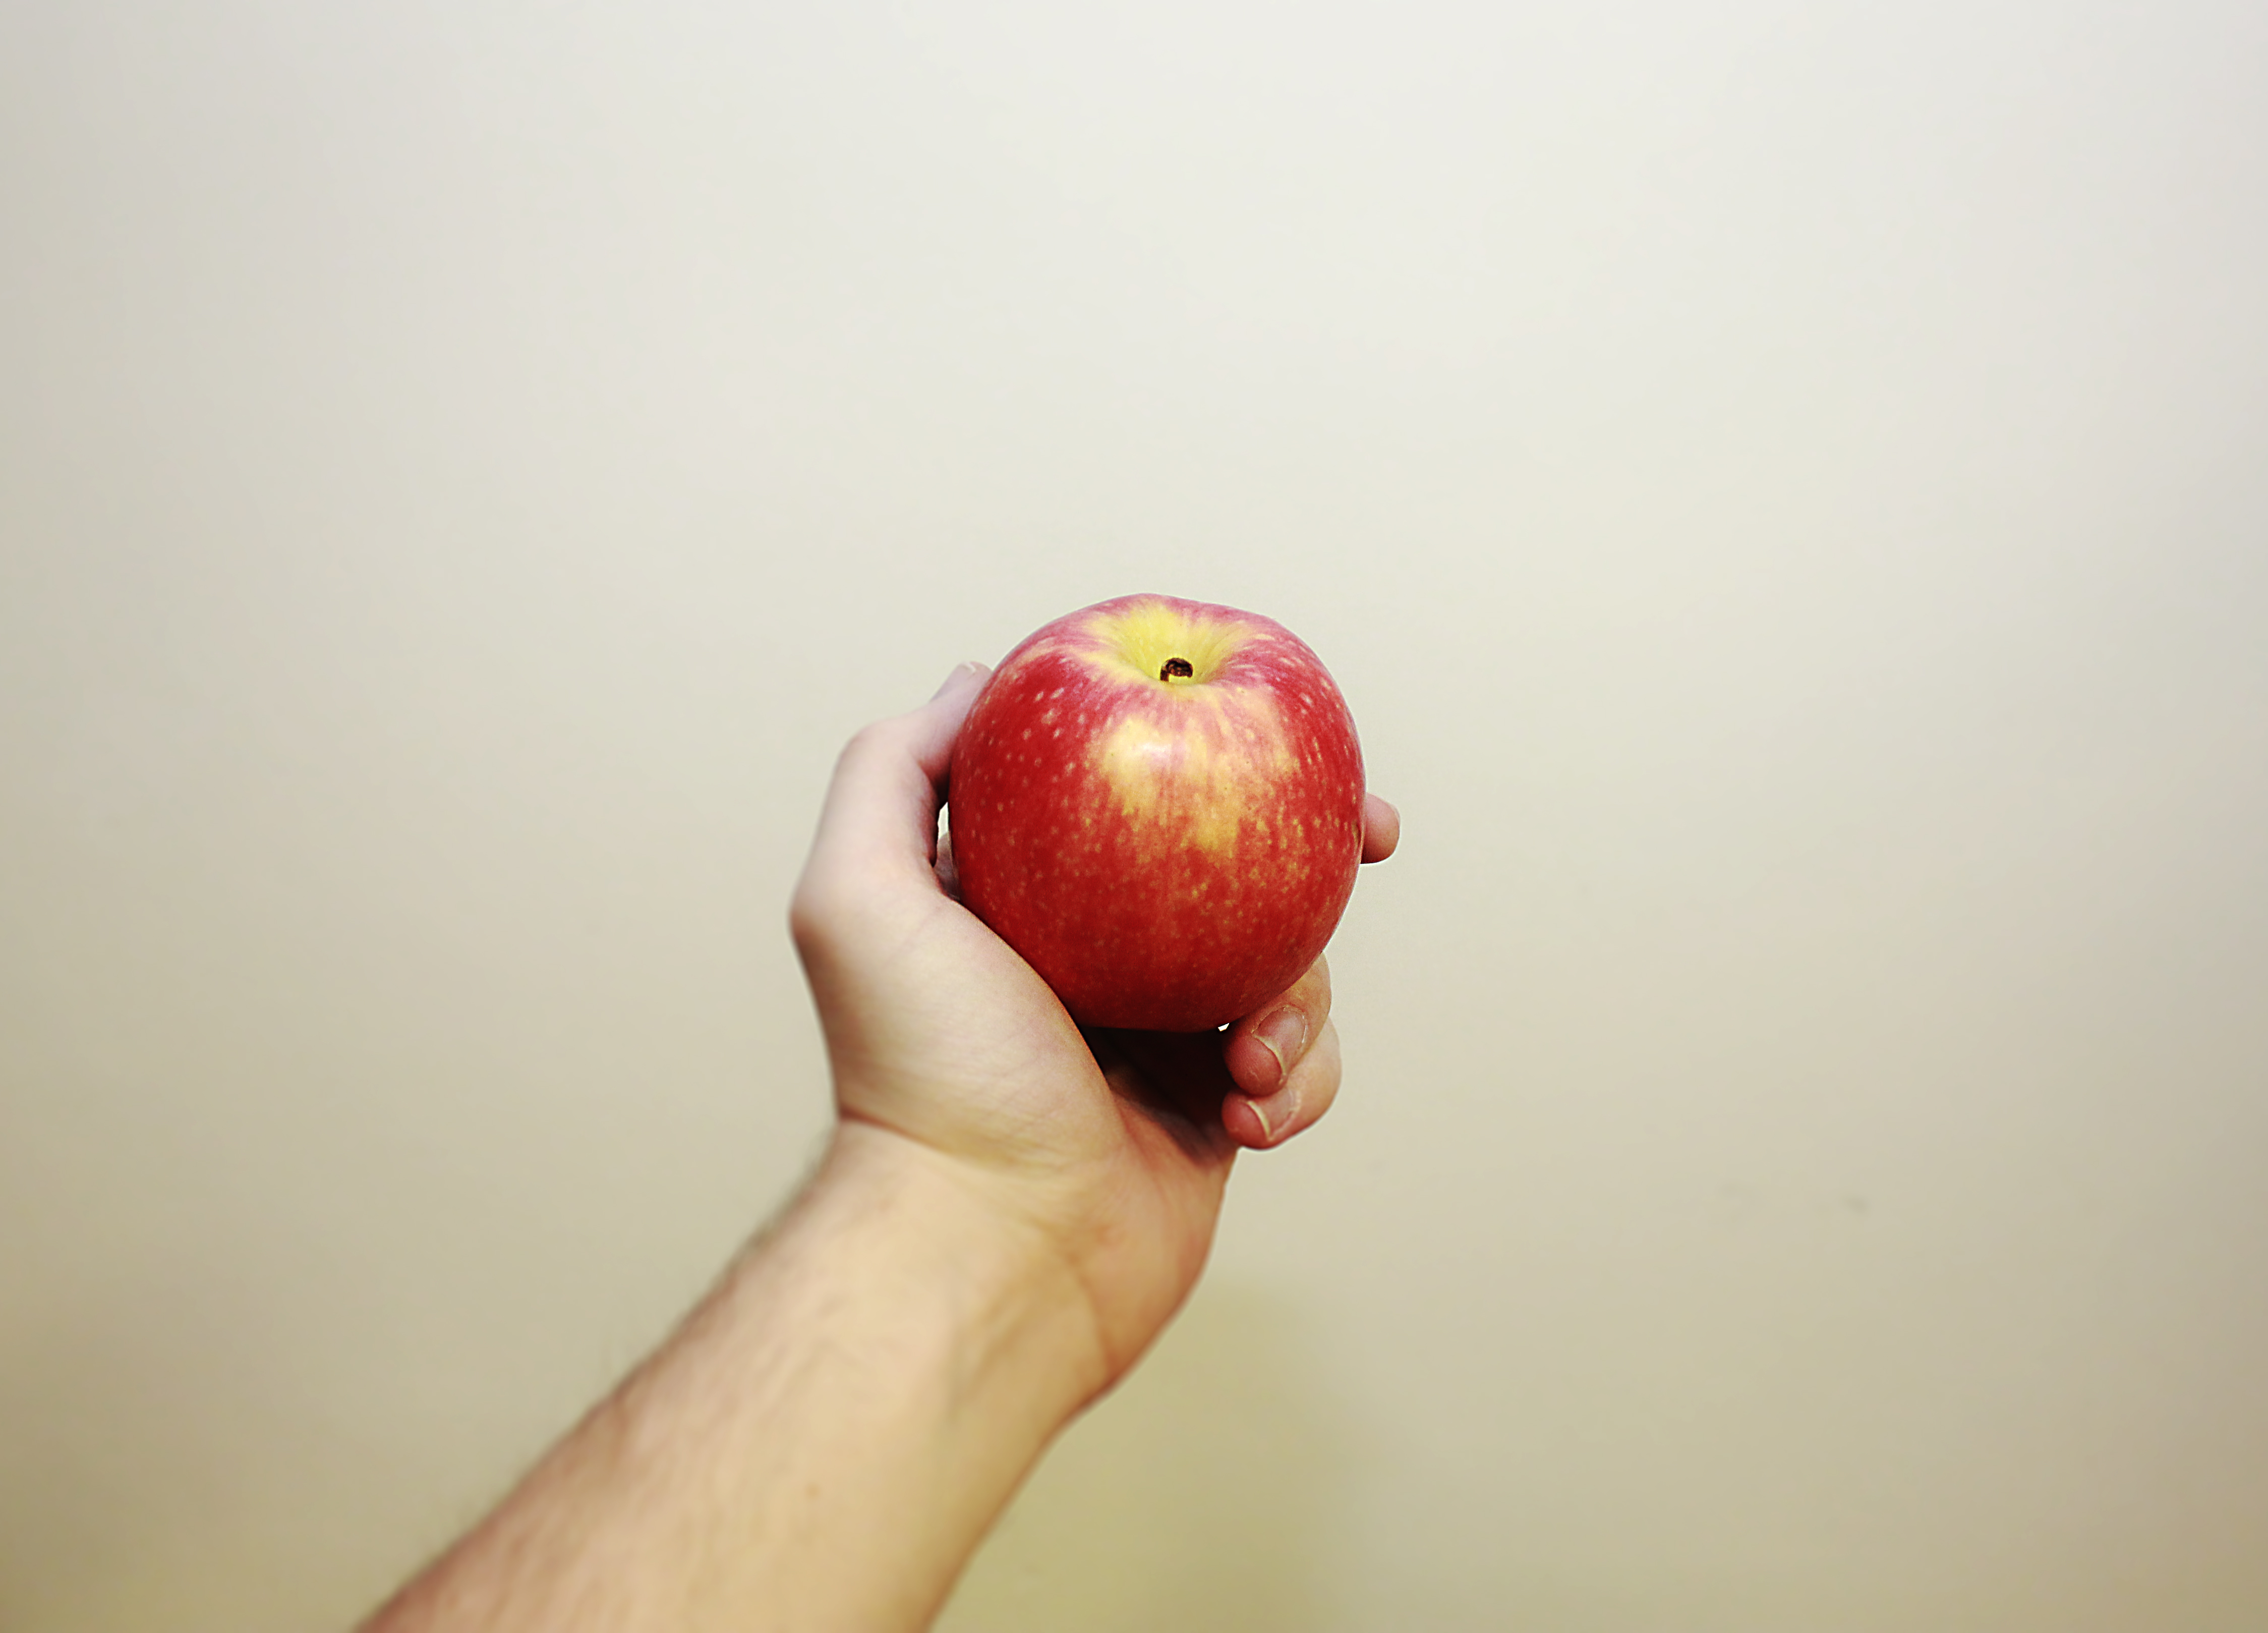 Кинуть яблоко. Яблоко. Яблоко в руке. Фрукты в руках. Протягивает яблоко.